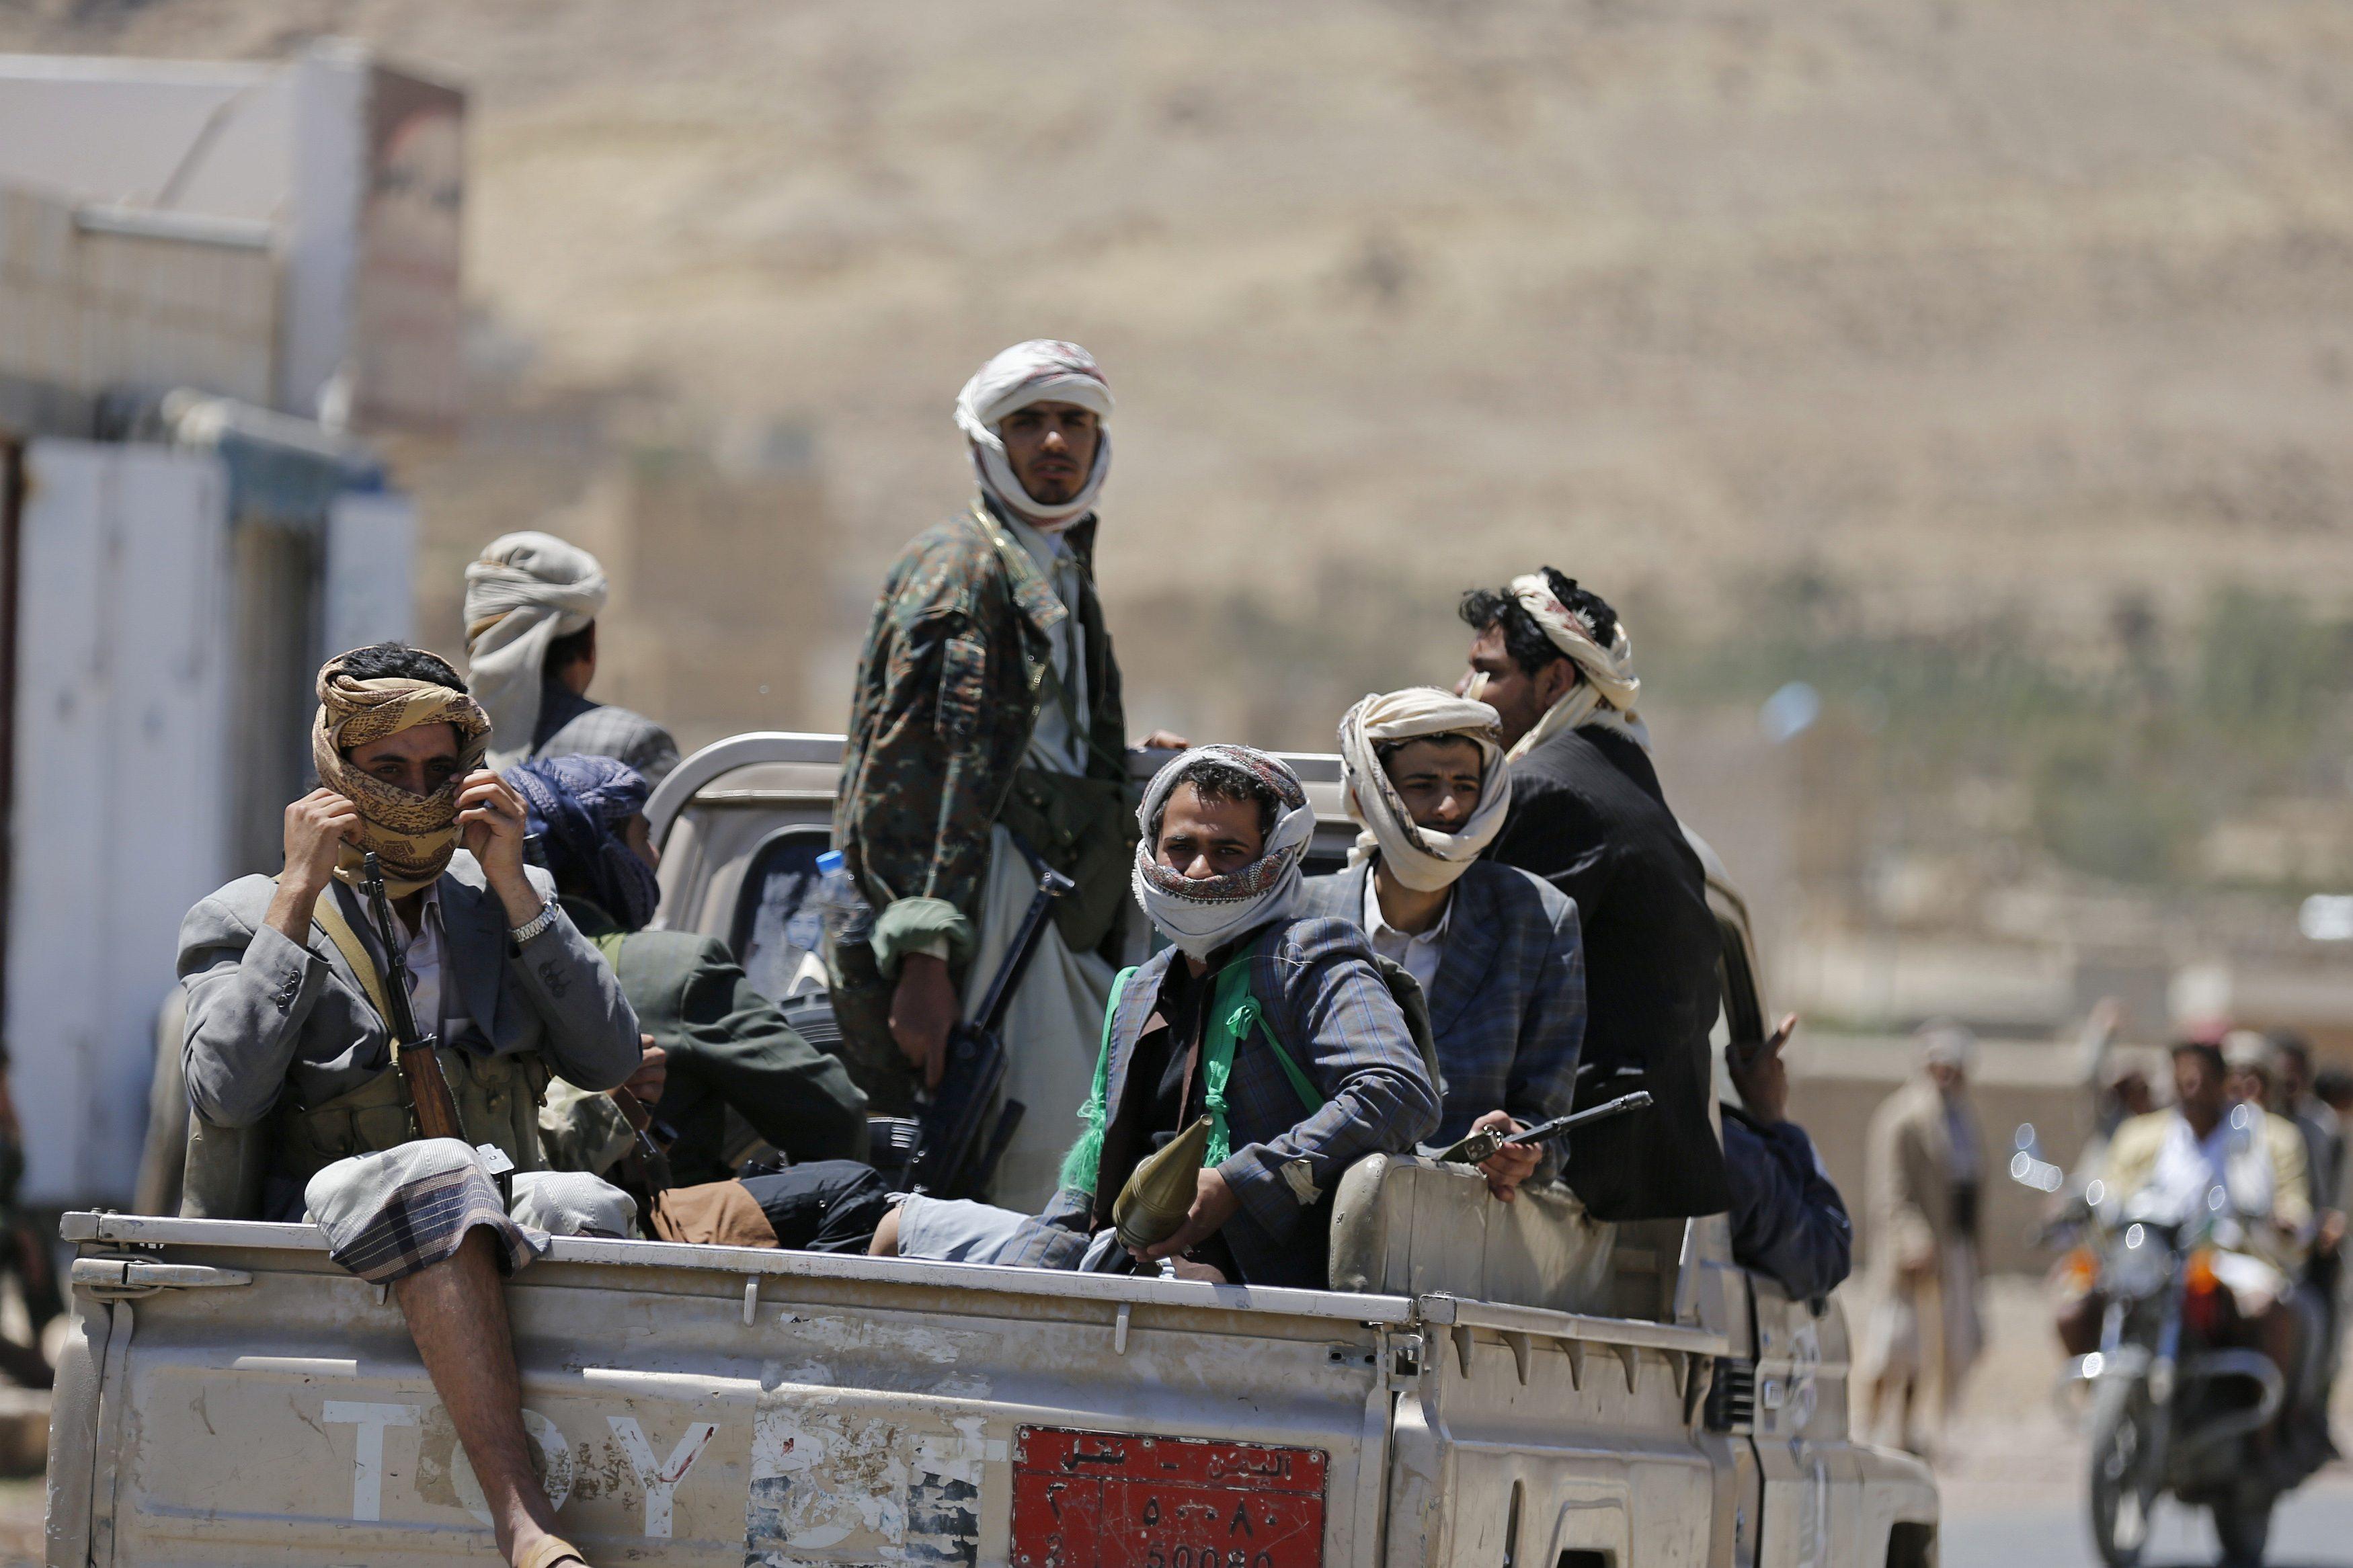 قتلى في اشتباكات بين القوات الحكومية و”الحوثيين” في الجوف اليمنية